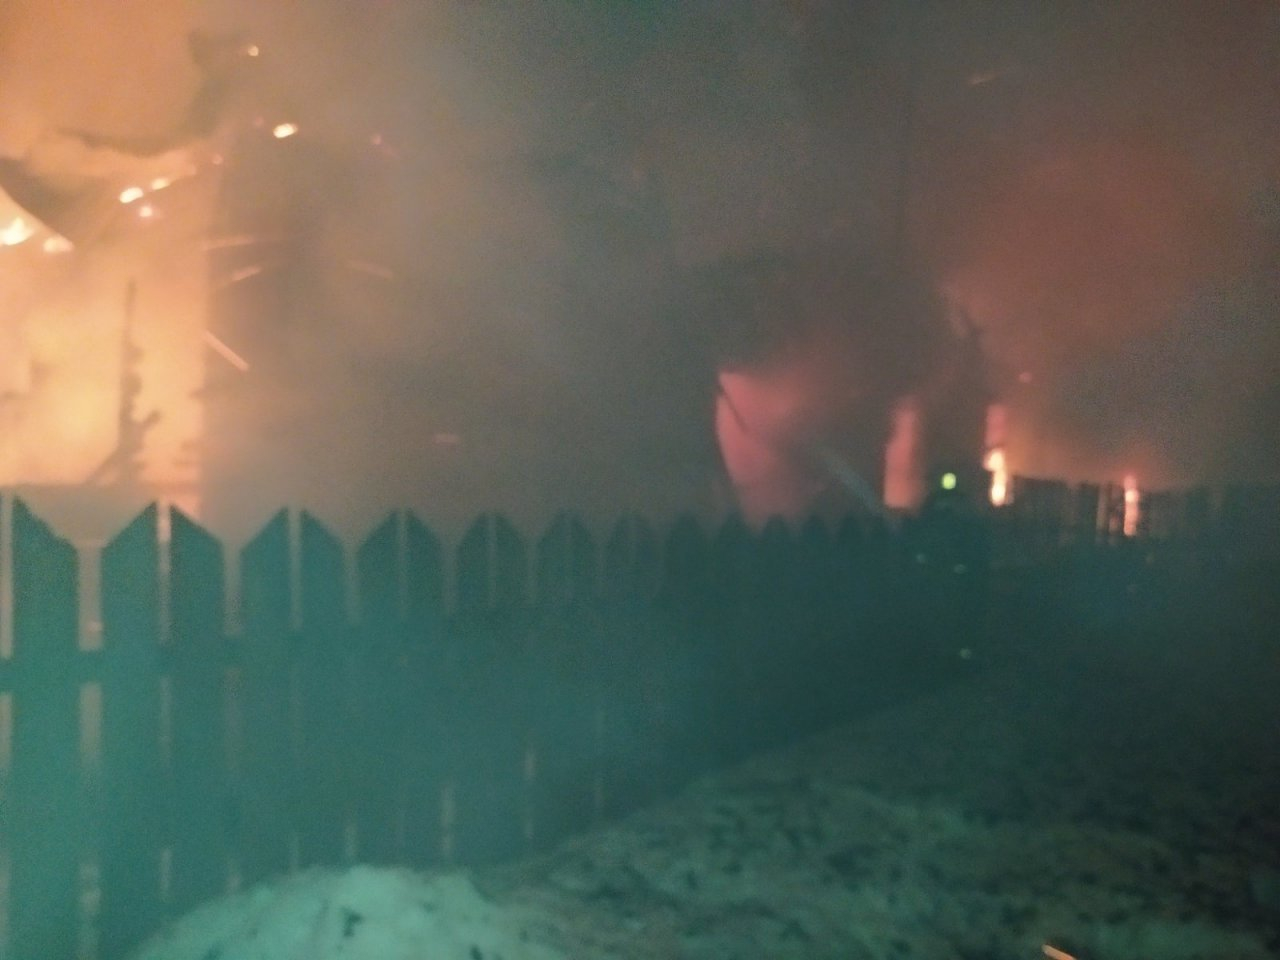 Все спали, когда услышали треск пожара: из-за сигареты сгорел дом на 2 семьи